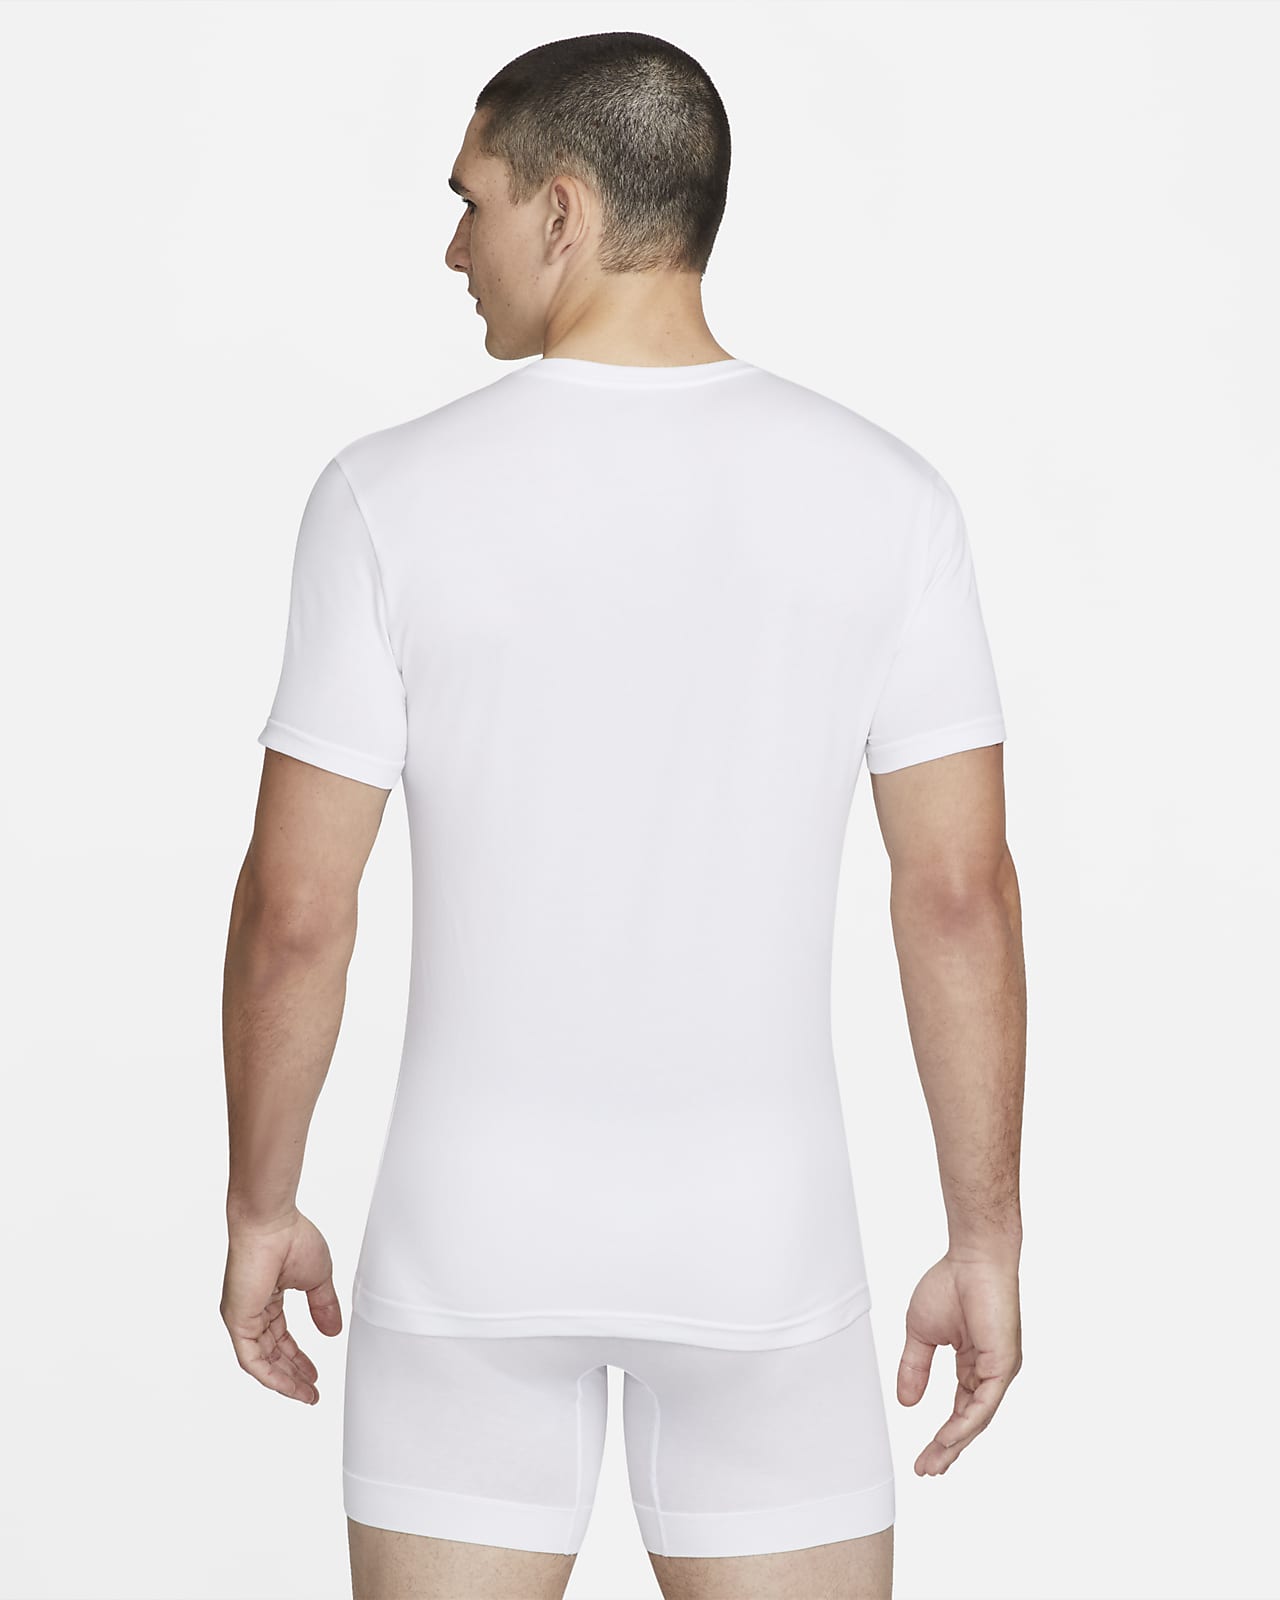 inval Grillig Ontslag nemen Nike Dri-FIT Essential Cotton Stretch Slim Fit V-Neck Undershirt (2-Pack).  Nike.com